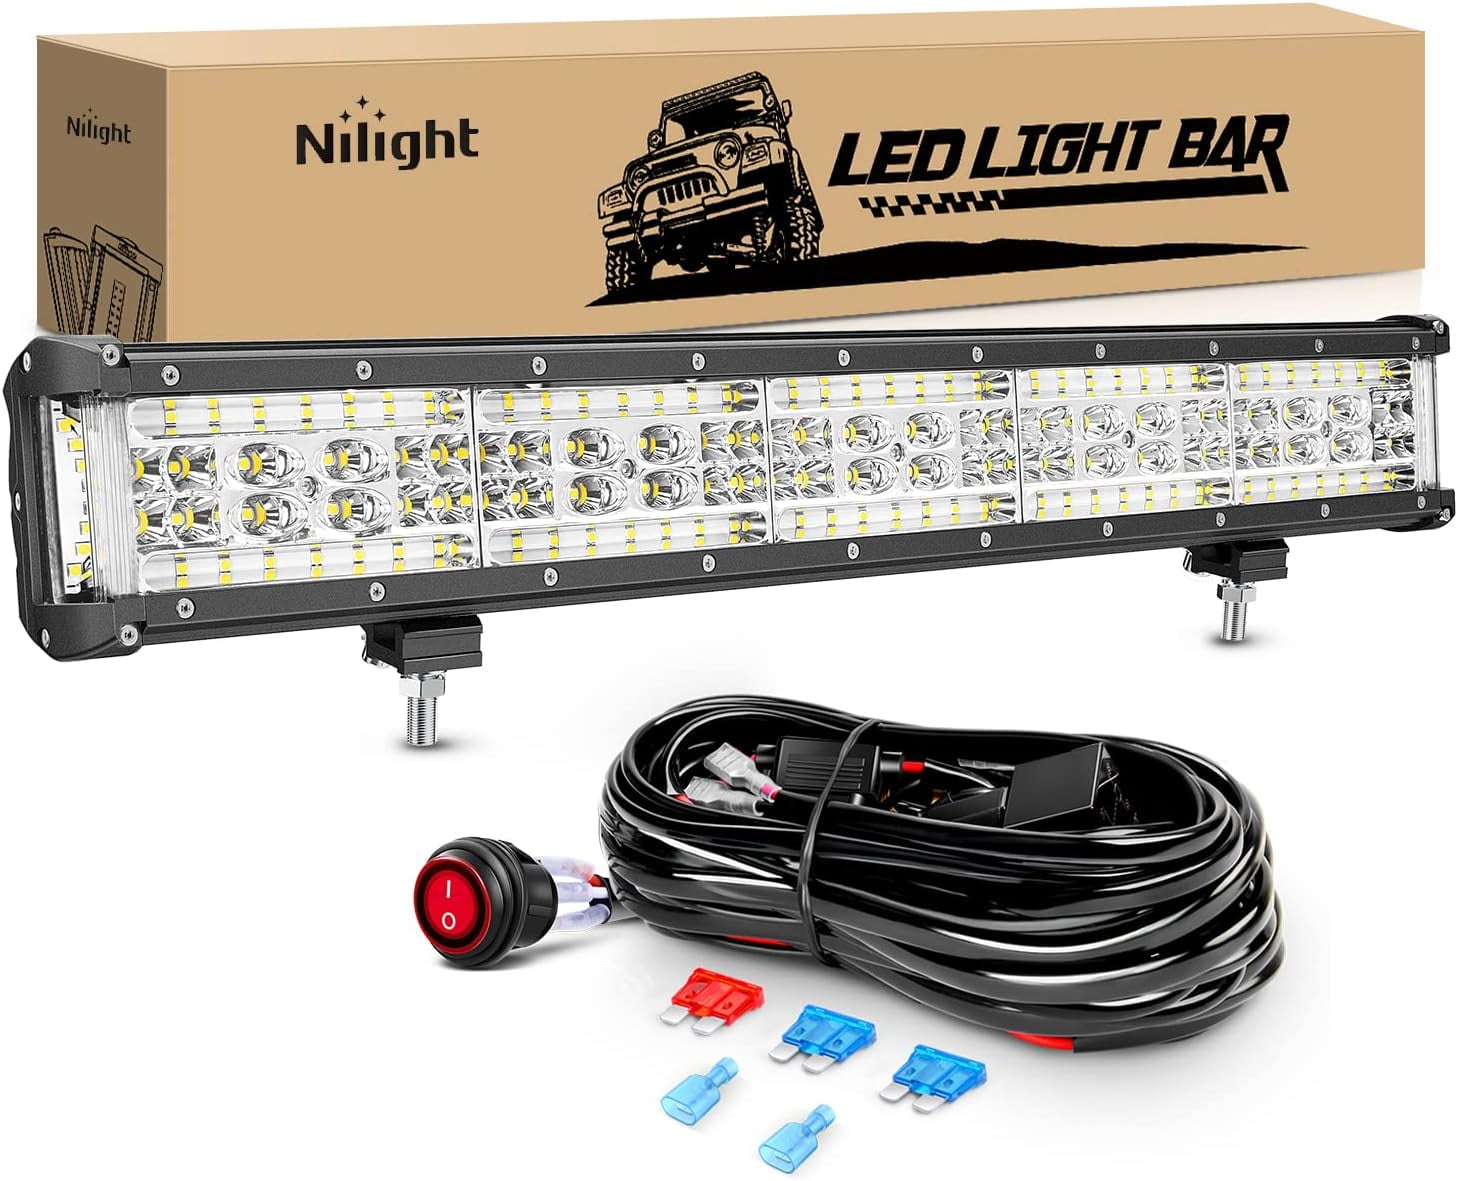 Willpower Tri Row 7D LED Light Bar 32 inch LED Bars Flood Spotlight Fog  Lamp